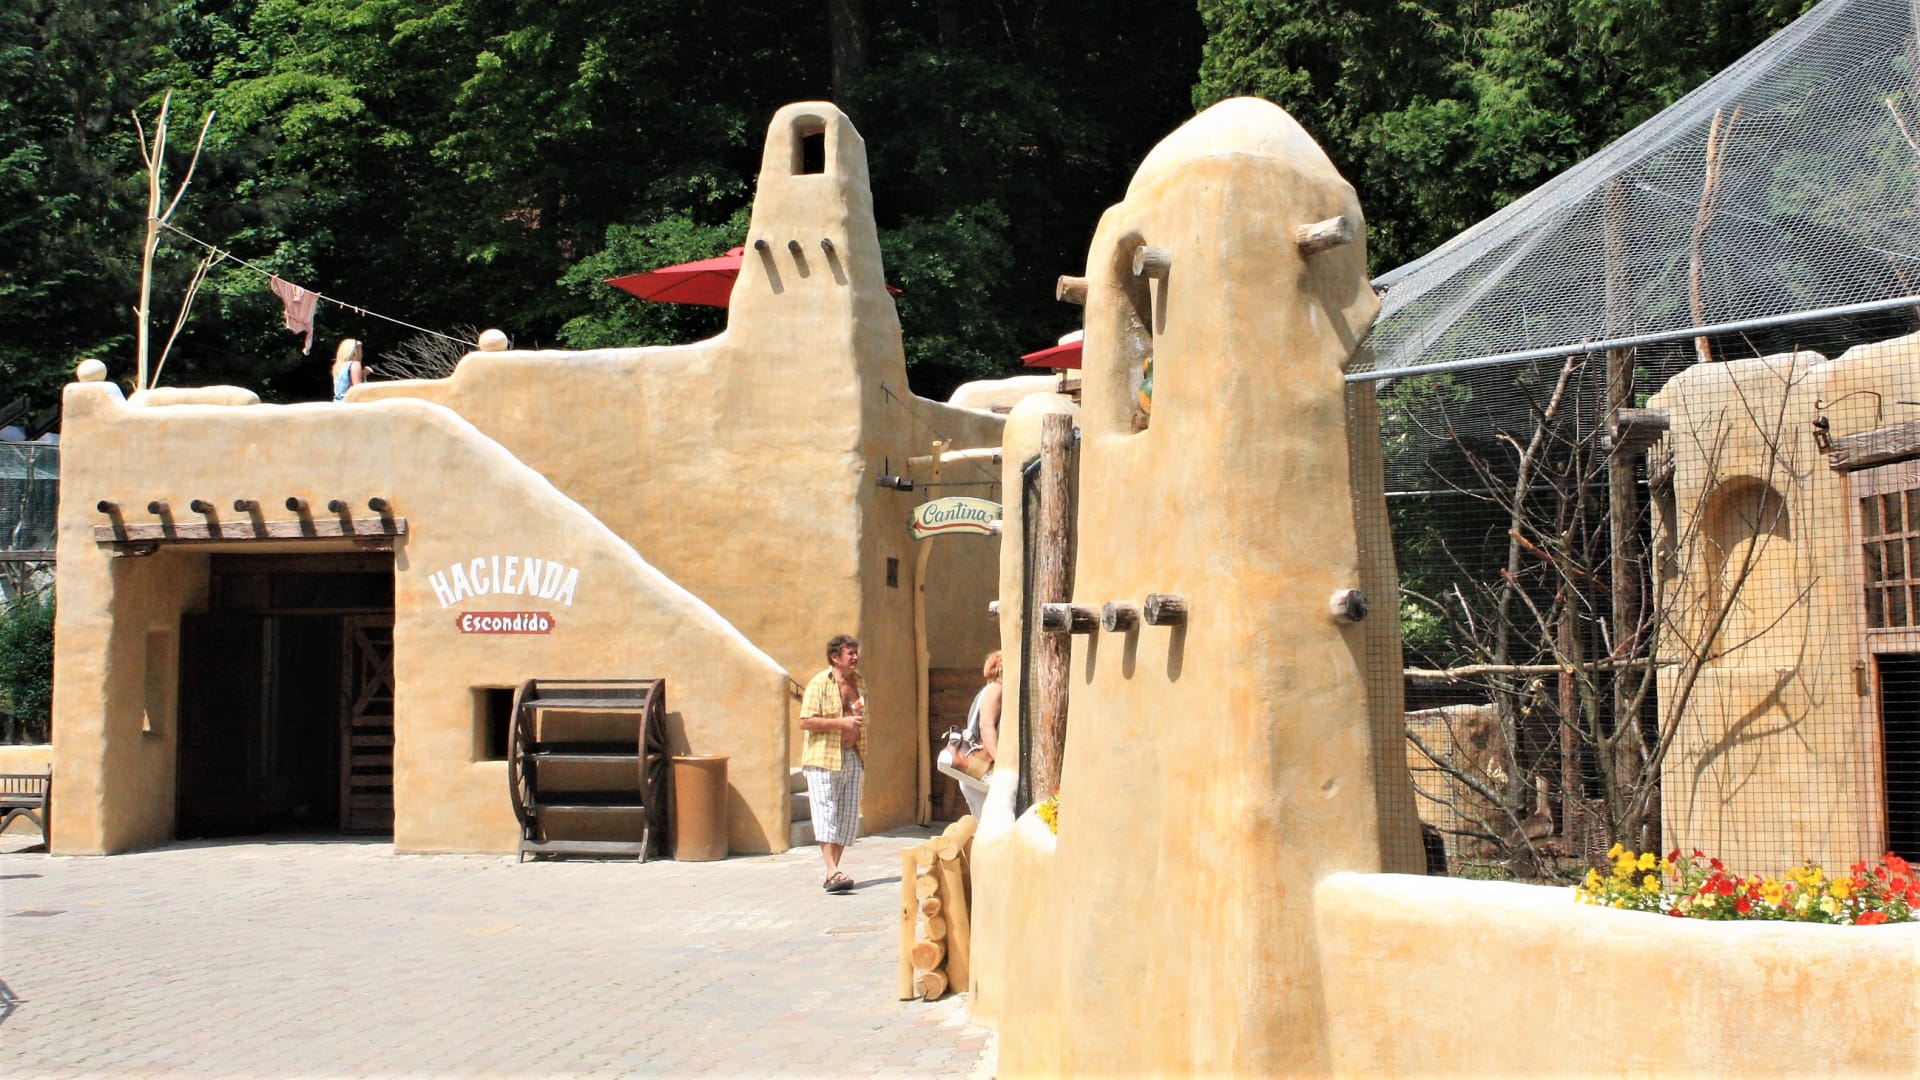 Zoo Jihlava:  pavilon v podobě hliněného puebla Hacienda Escondido, uvnitř kterého můžete poznat přírodu Amazonie s pobíhajícími opičkami, odpočívajícími lenochody či plovoucími rybami.